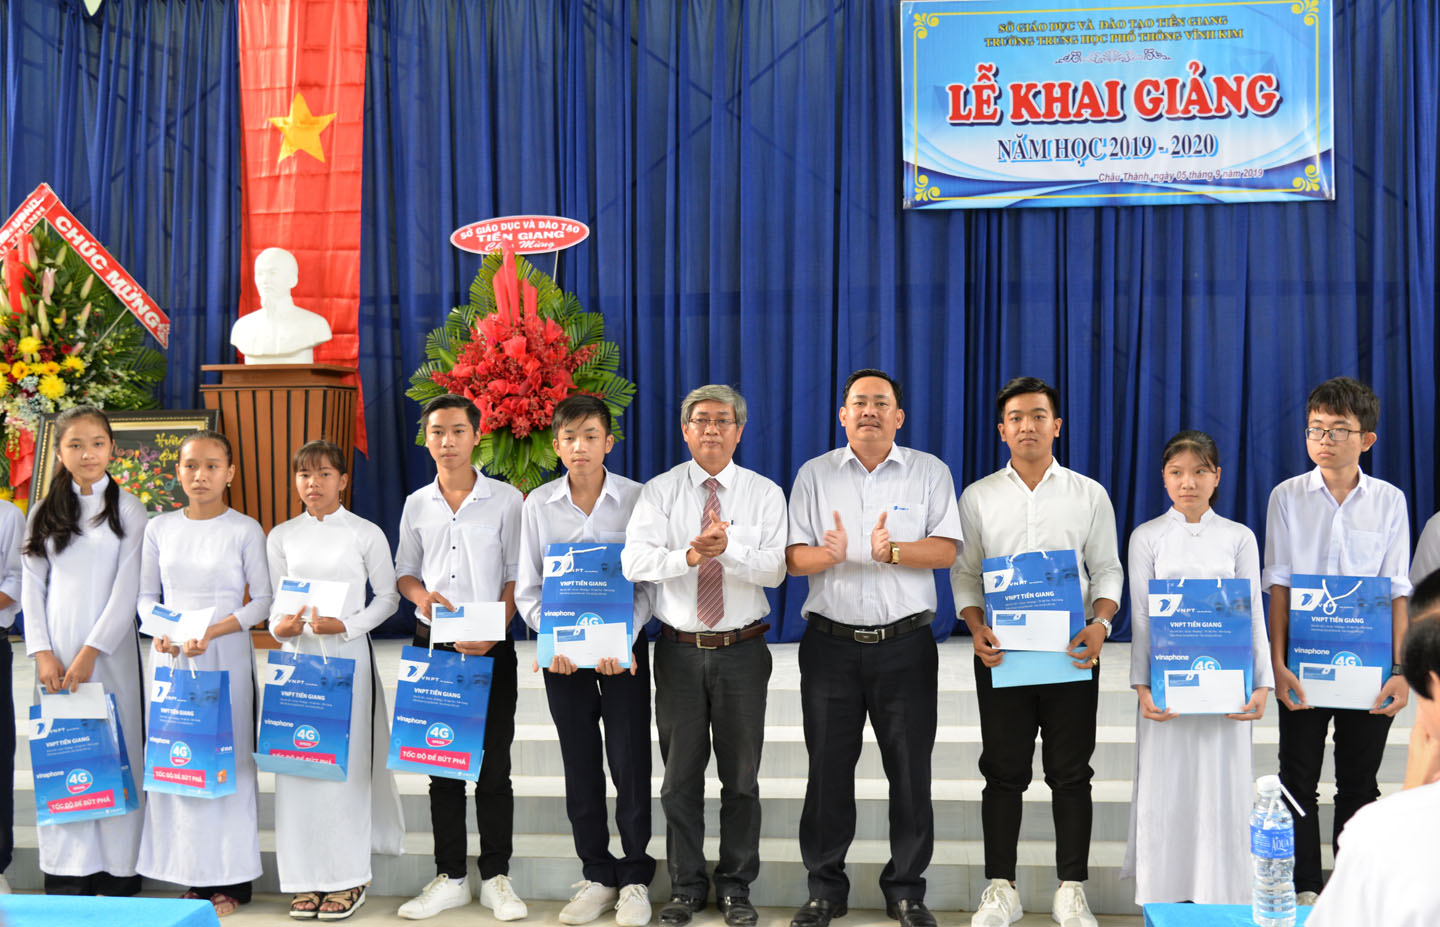 Đại diện VNPT Châu Thành trao tặng phẩm và 50 suất học bổng trị giá 50 triệu đồng cho các học sinh vượt khó